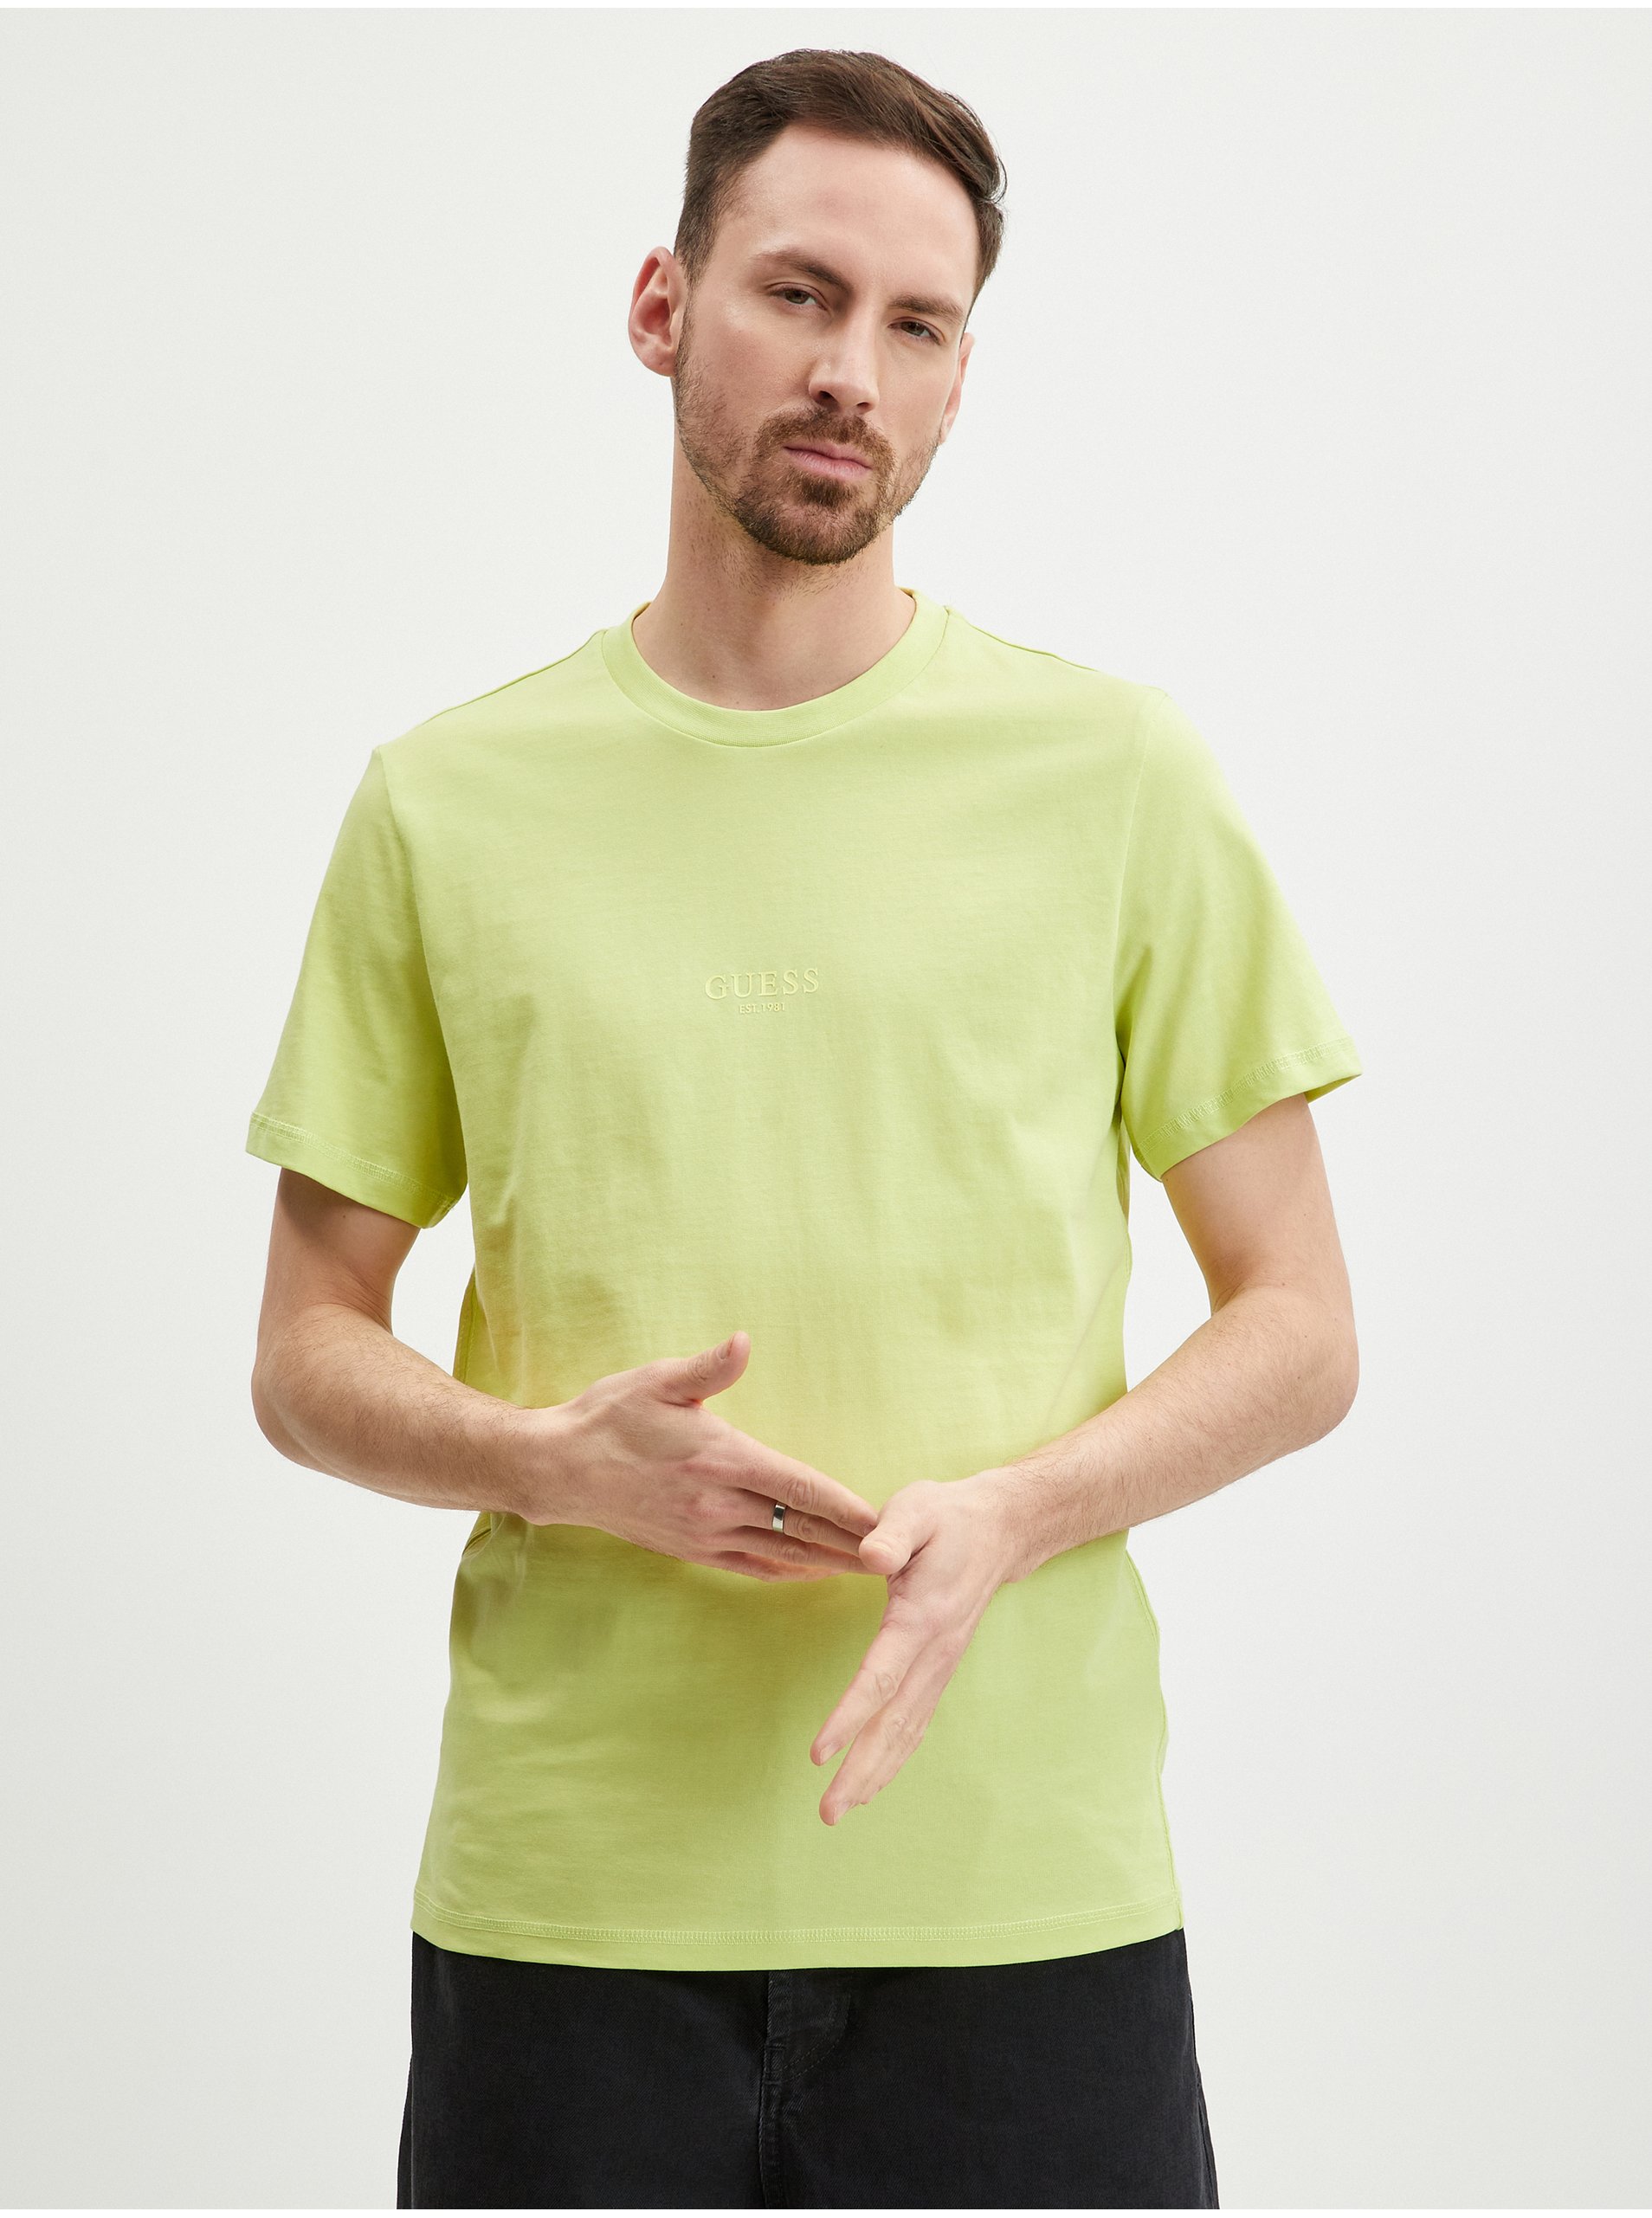 Light green men's T-shirt Guess Aidy - Men